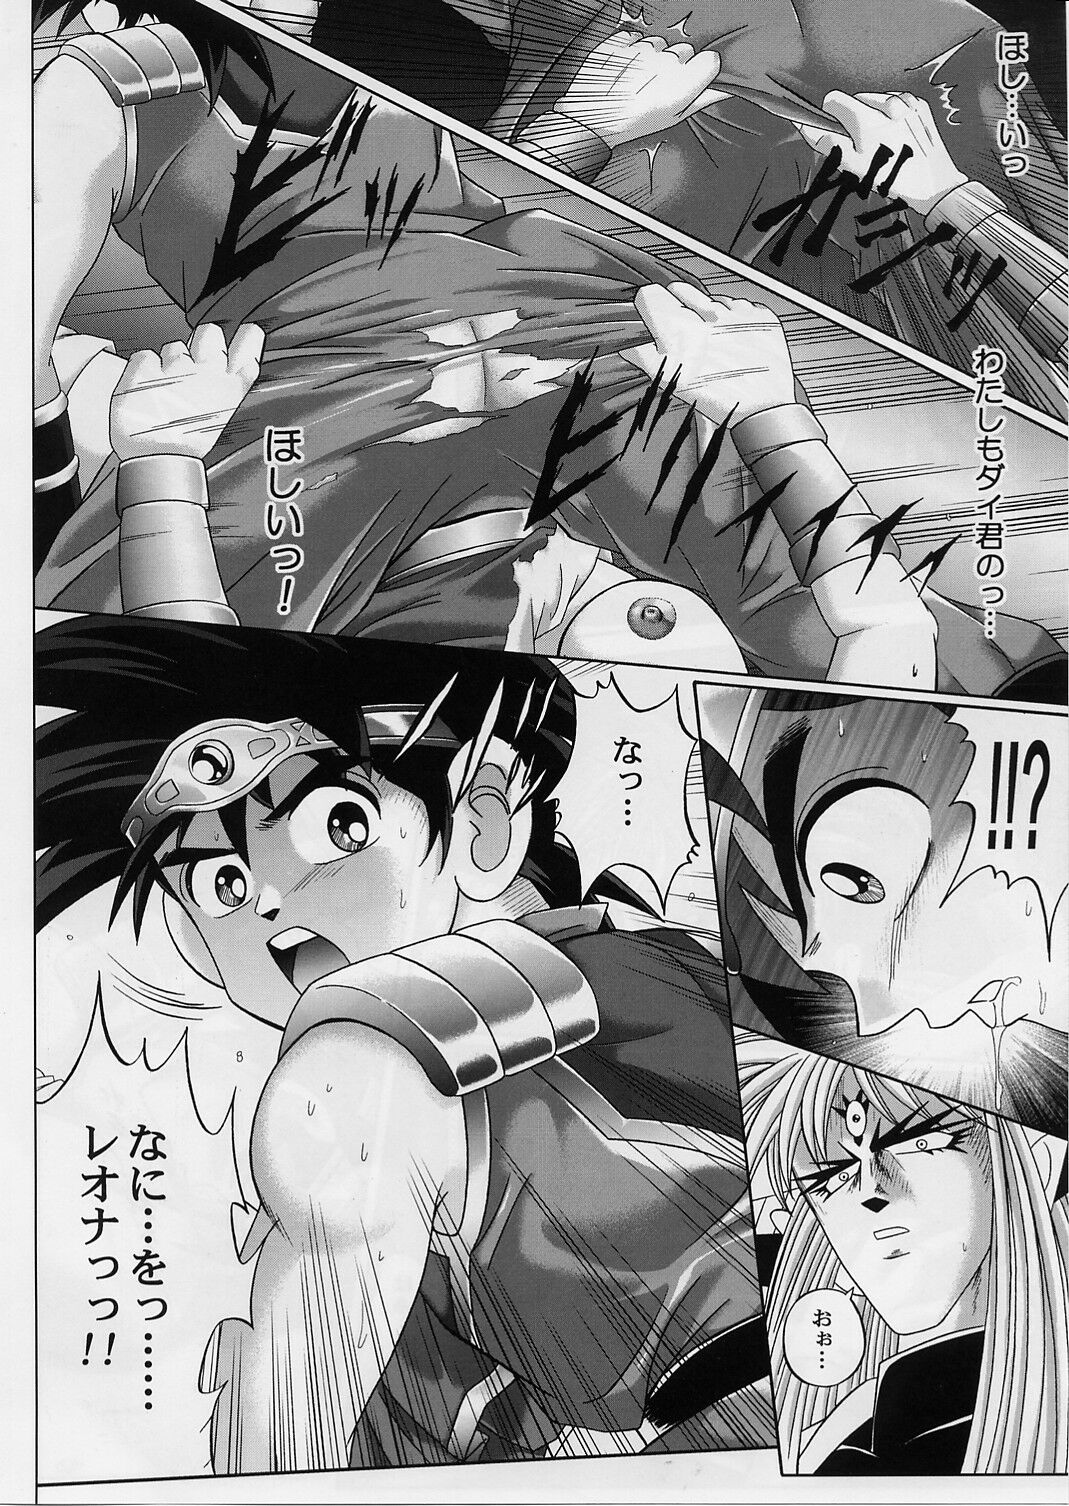 [Cyclone (Izumi, Reizei)] DIME ALLIANCE 2 (Dragon Quest Dai no Daibouken) page 27 full